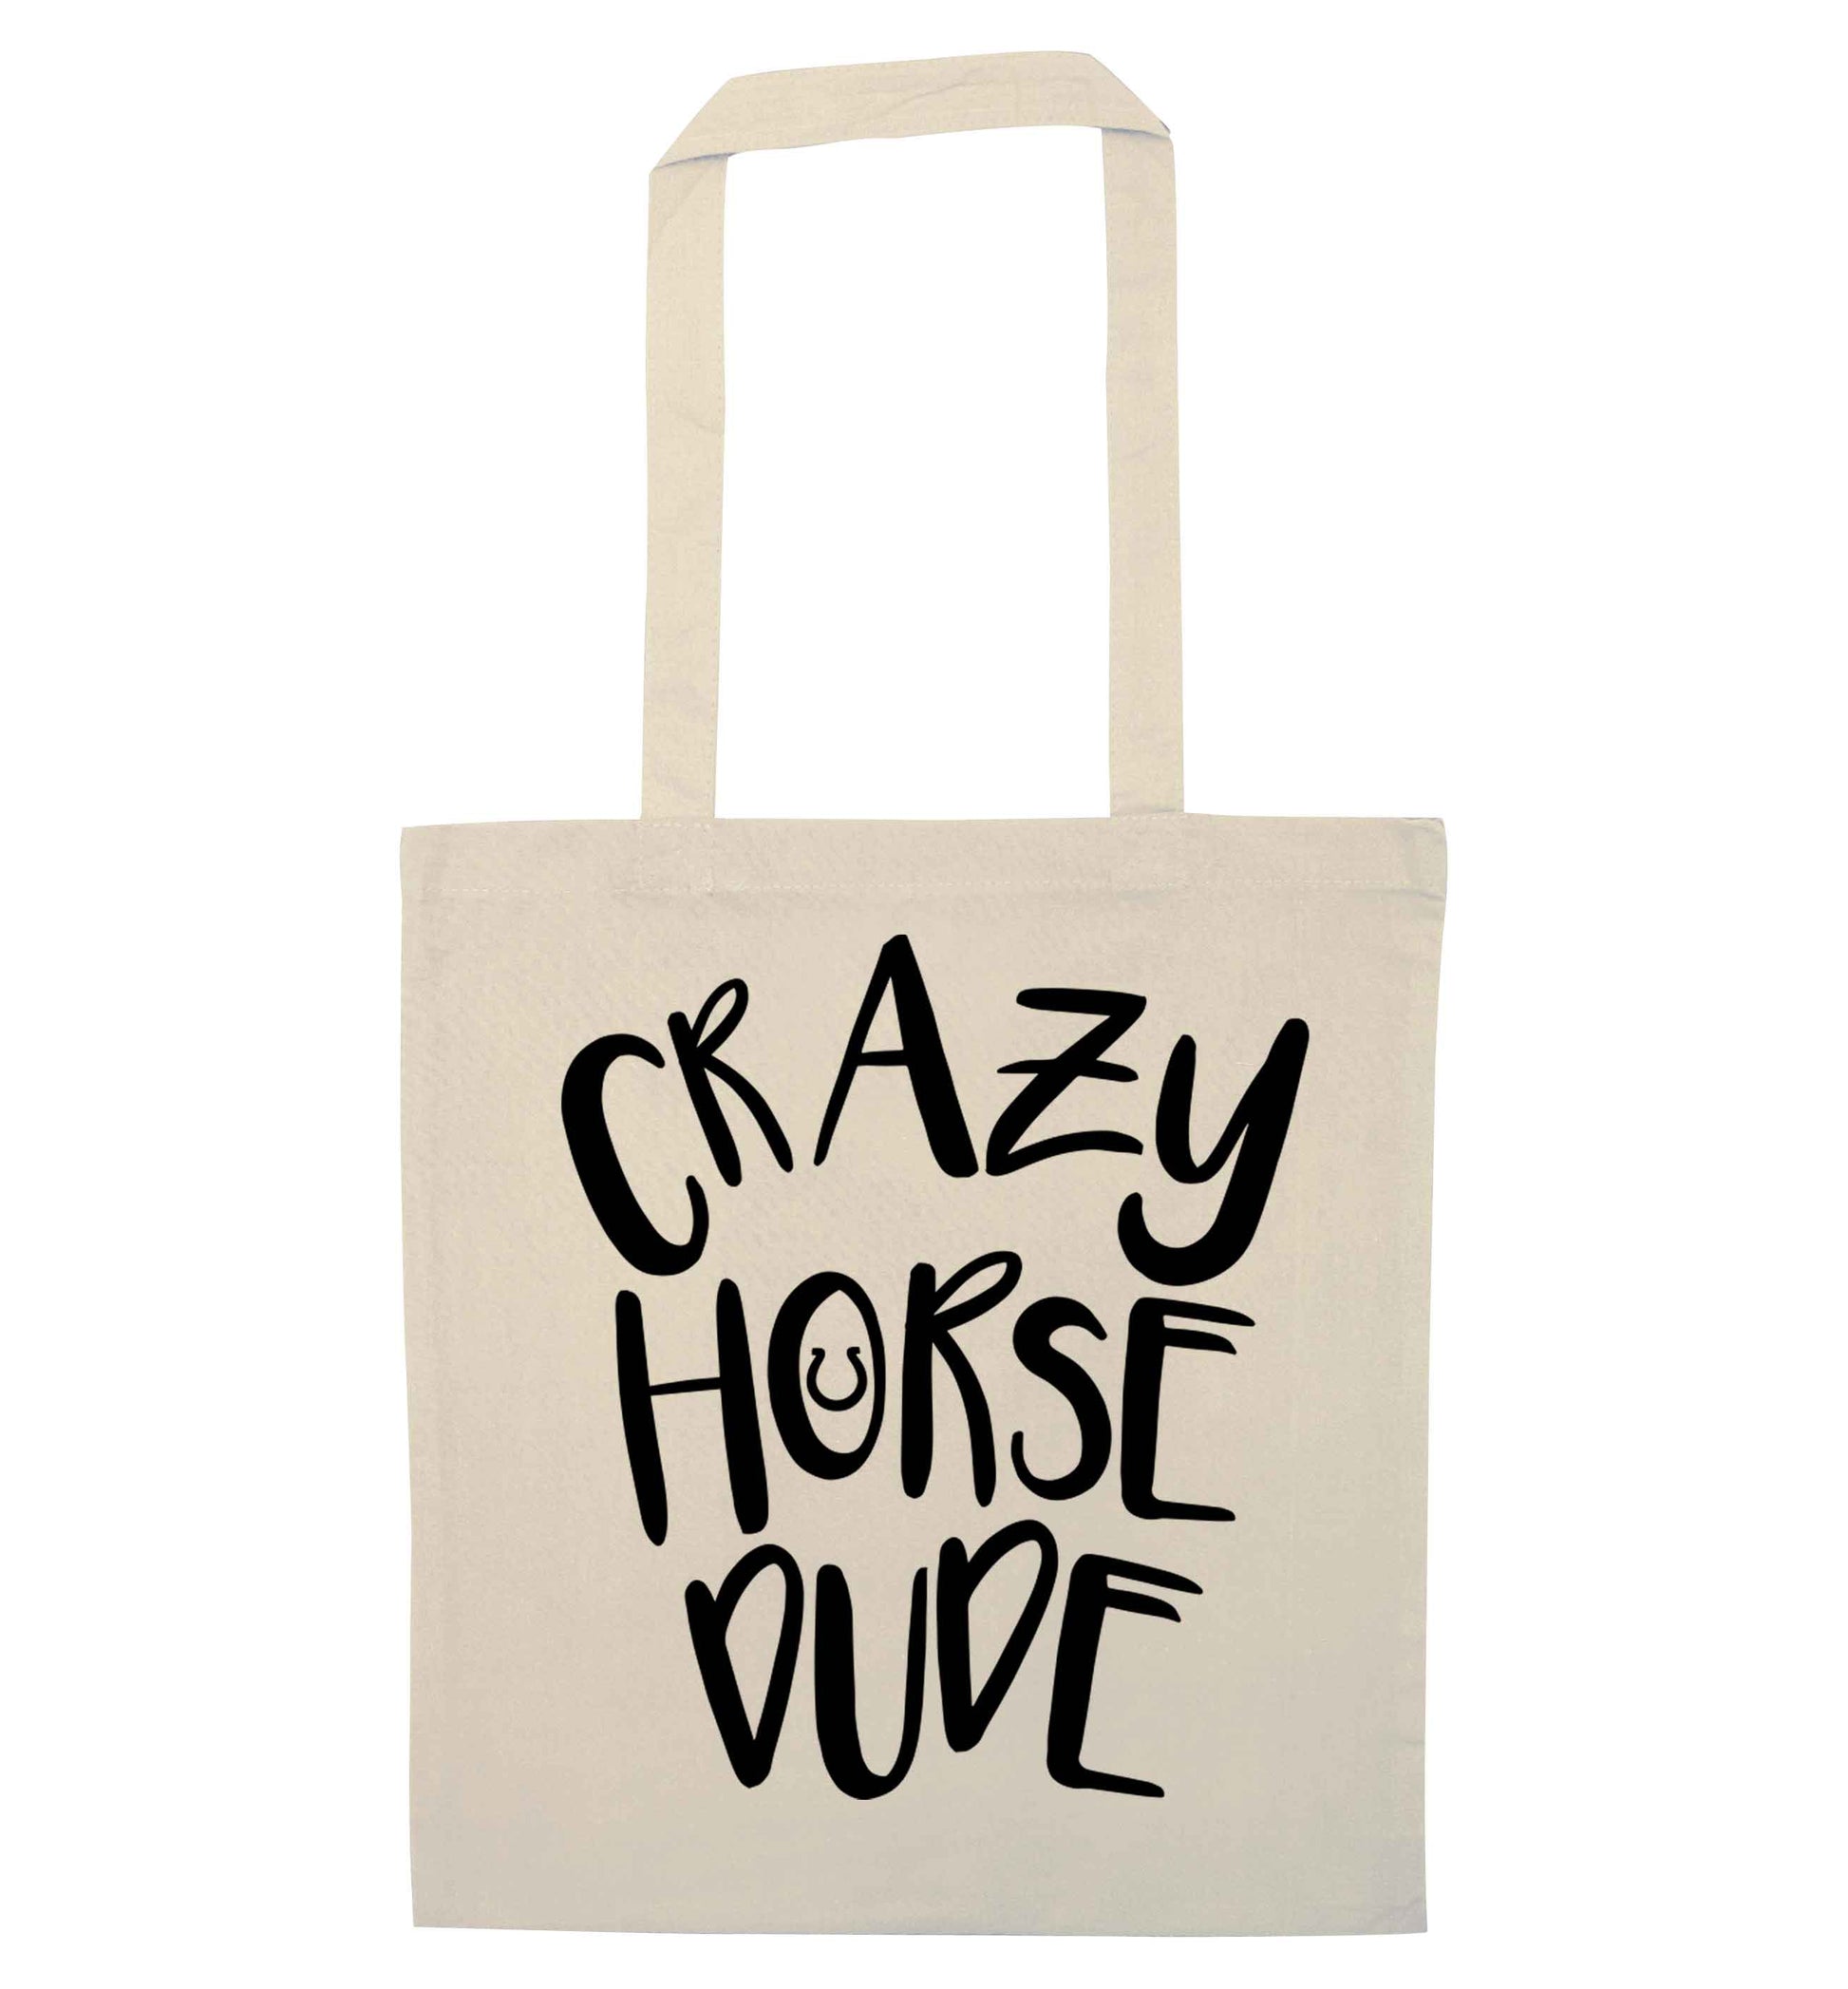 Crazy horse dude natural tote bag